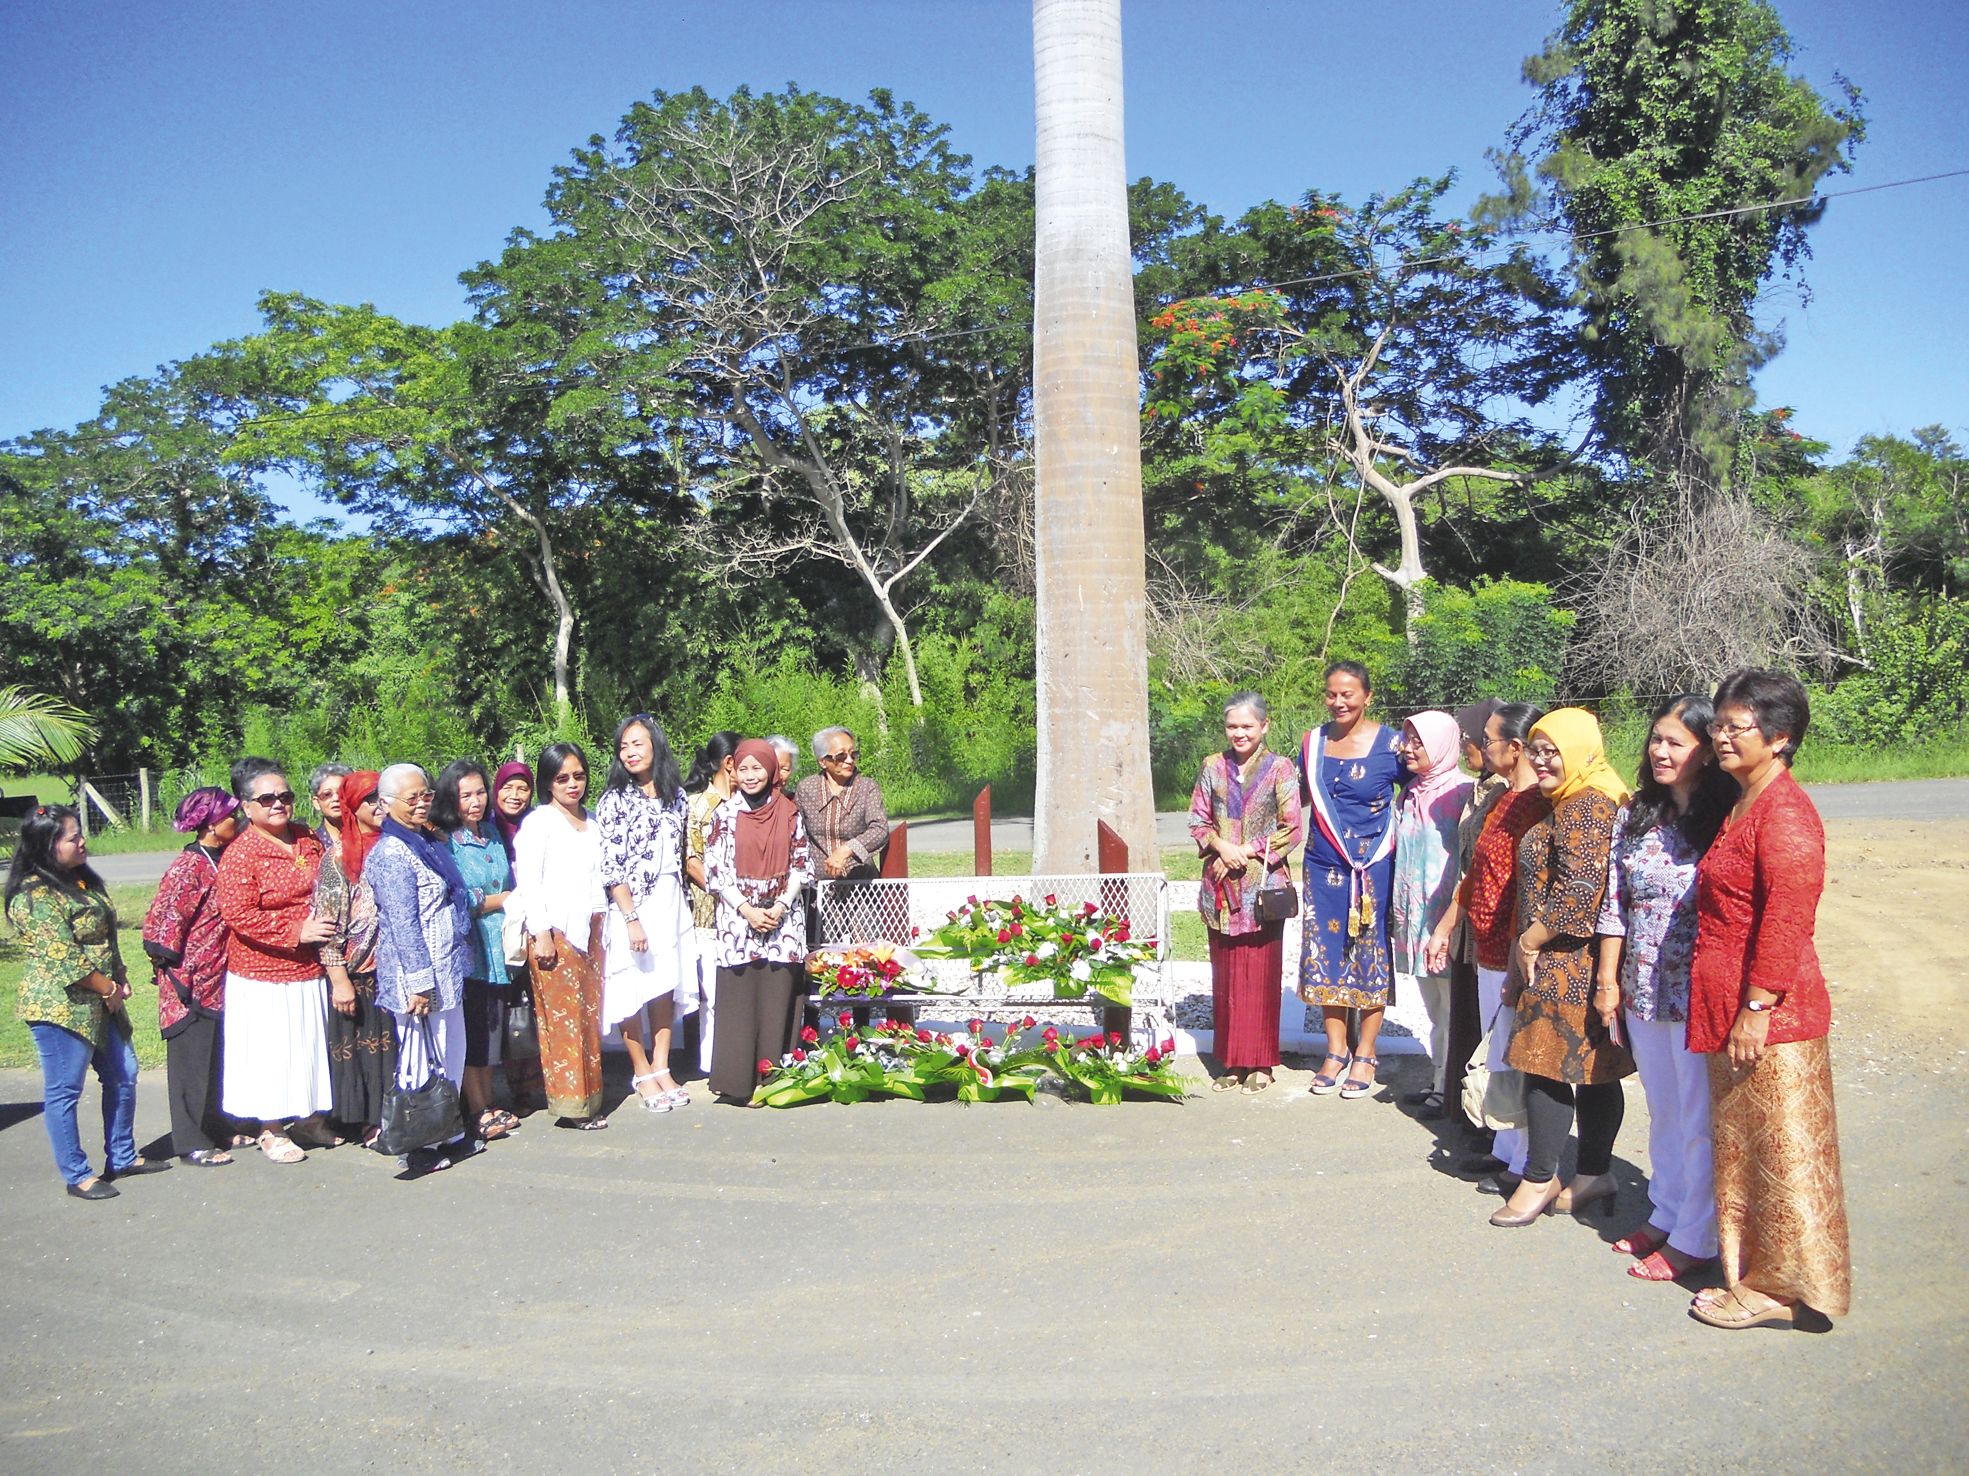 La Foa, samedi 27 février. Les femmes indonésiennes se sont réunies près de la stèle commémorative pour marquer le 120e anniversaire de l'arrivée de la communauté dans le pays.